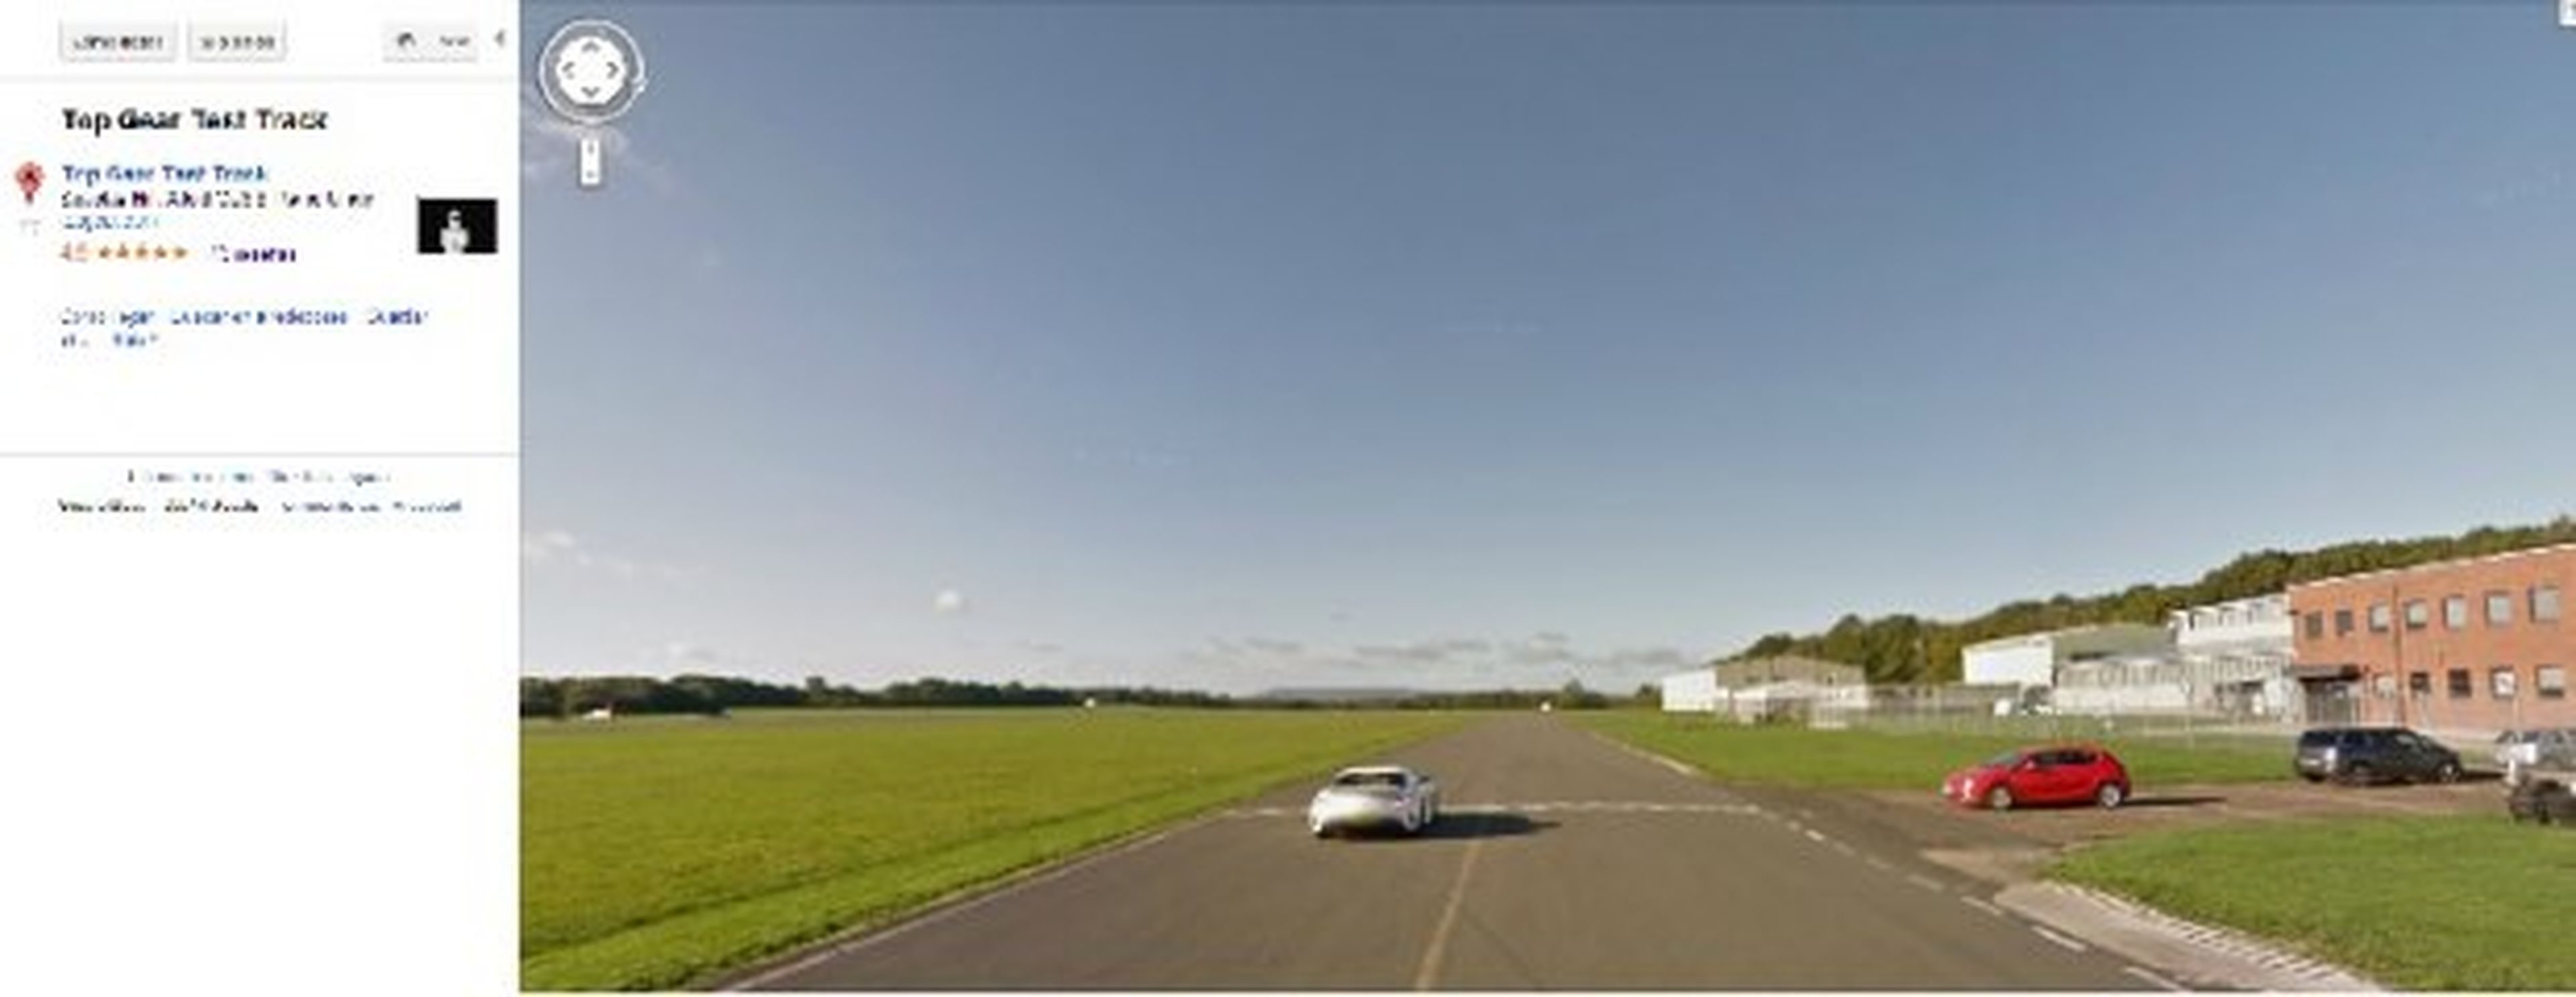 La pista de Top Gear abre sus puertas a Google Street View